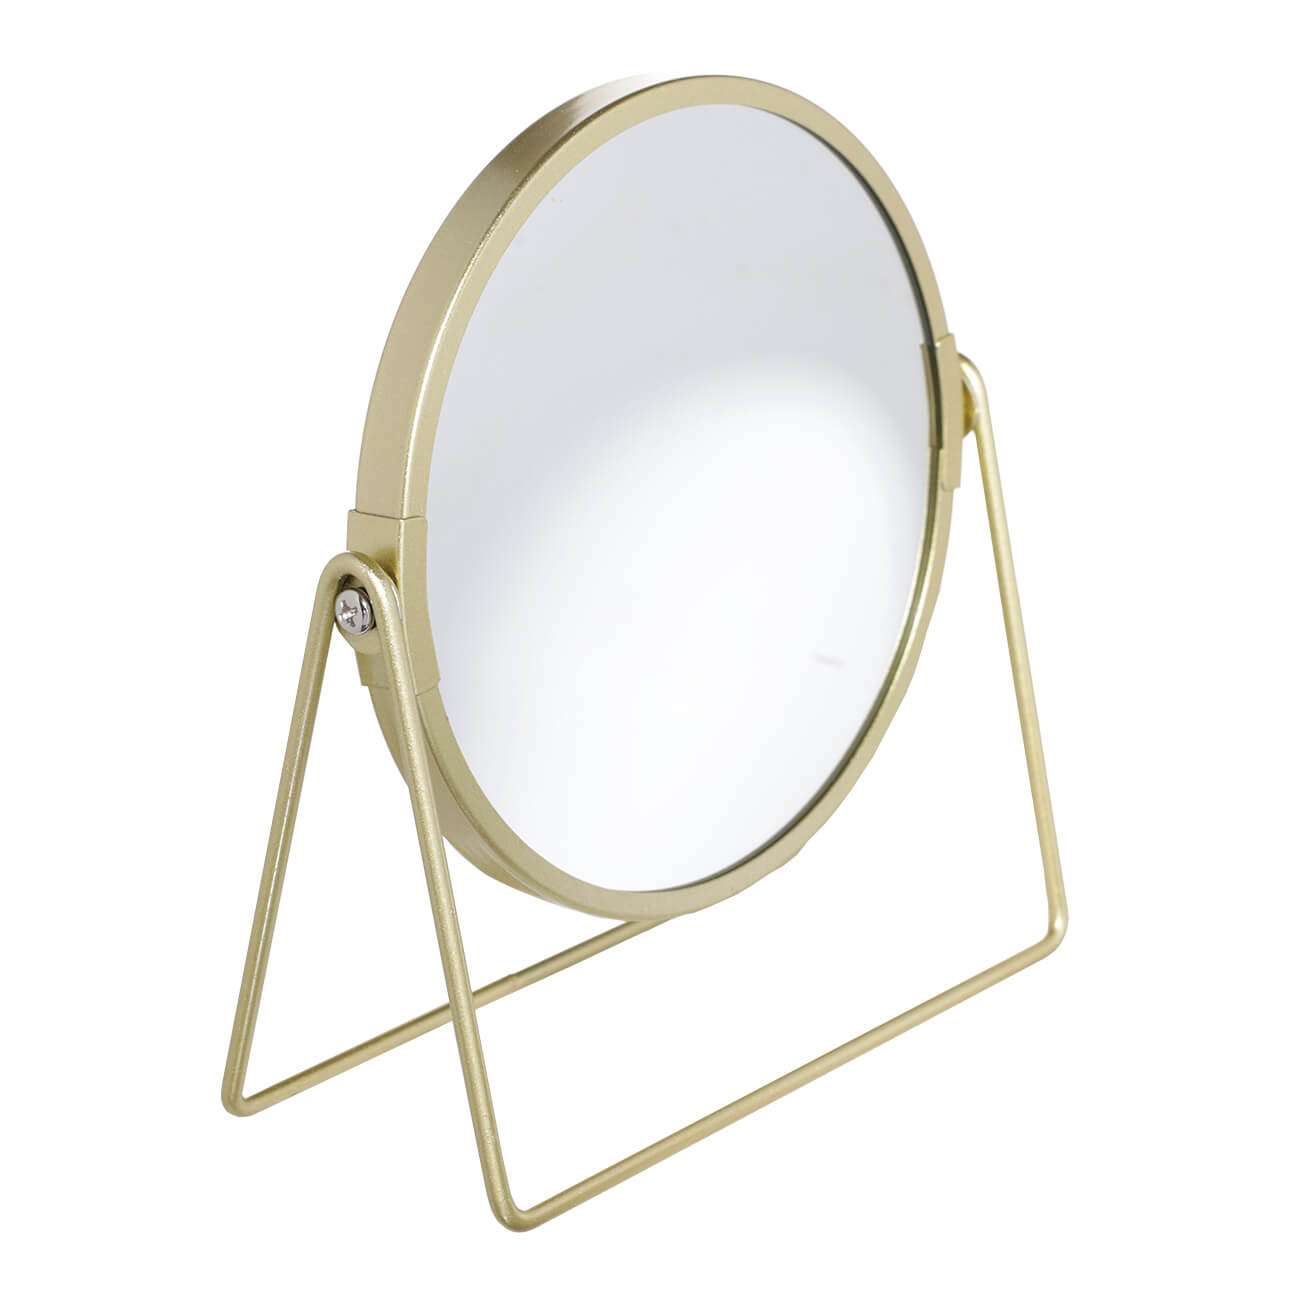 Зеркало настольное, 18 см, двустороннее, металл, круглое, золотистое, Freya зеркало косметическое two dolfins настольное увеличительное круглое 17 см